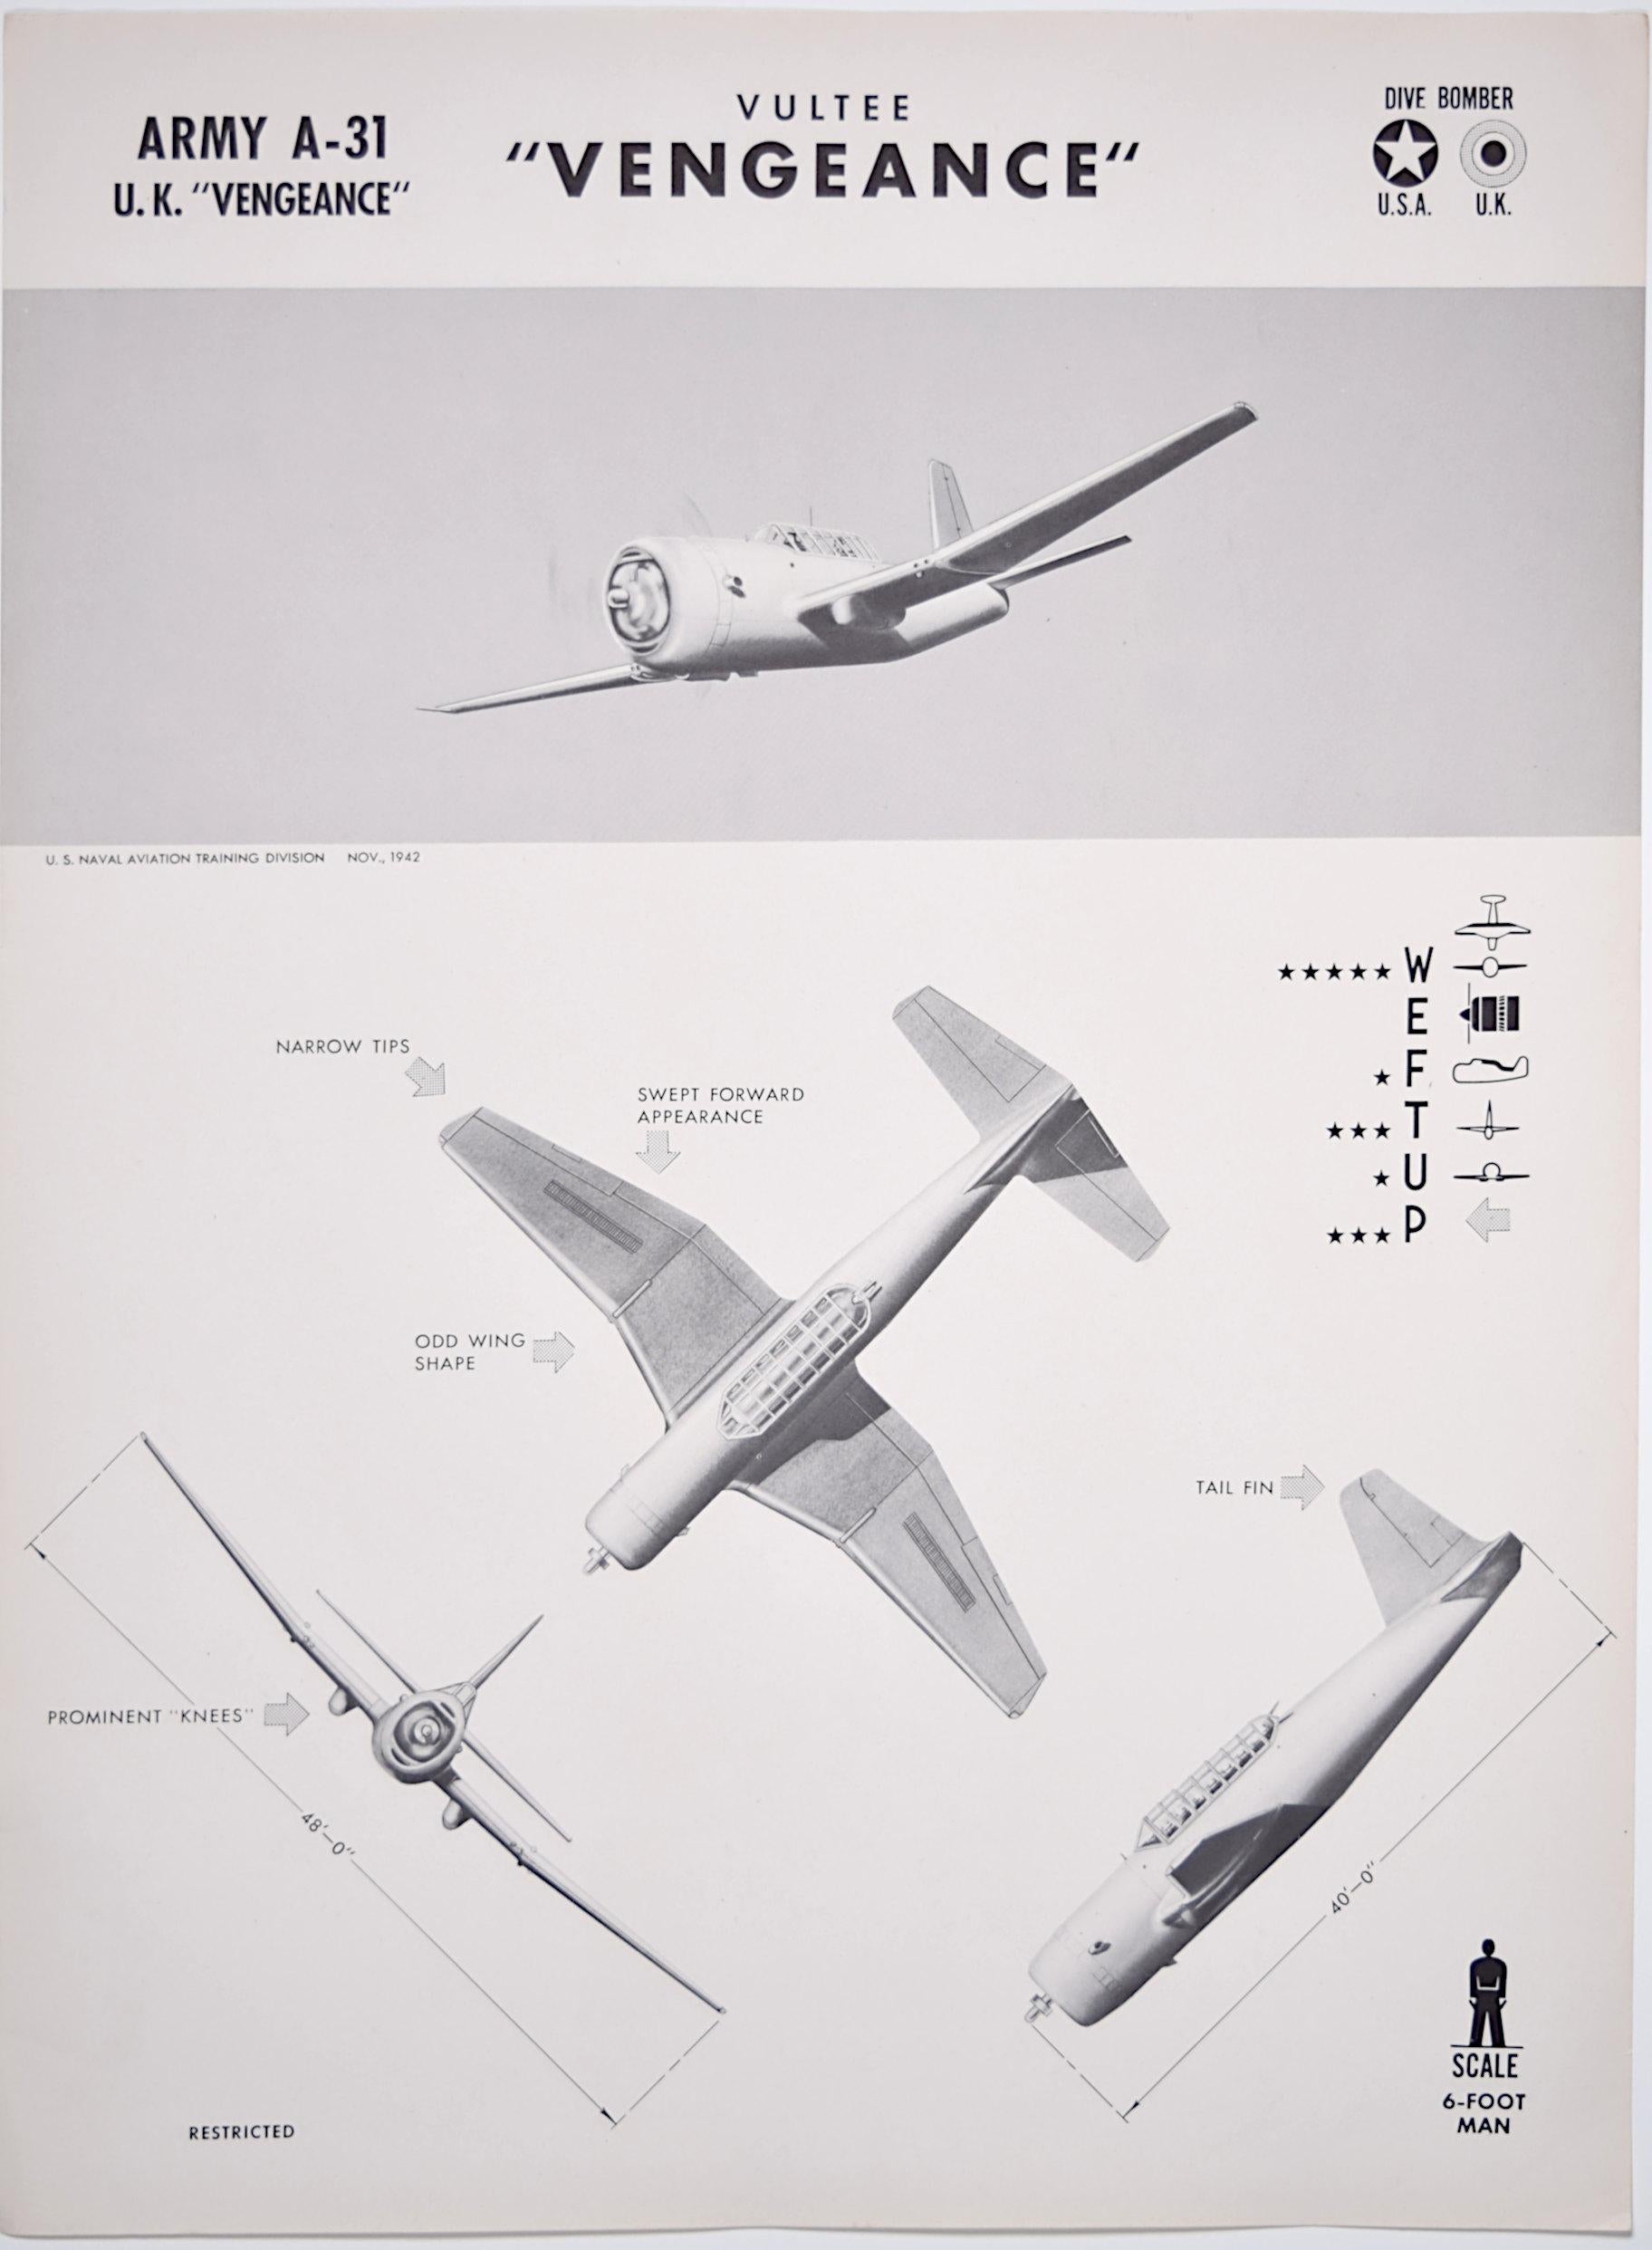 1943 Vultee Vengeance Affiche de reconnaissance de l'avion de la Seconde Guerre mondiale pub. Marine américaine RAF - Moderne Print par Unknown